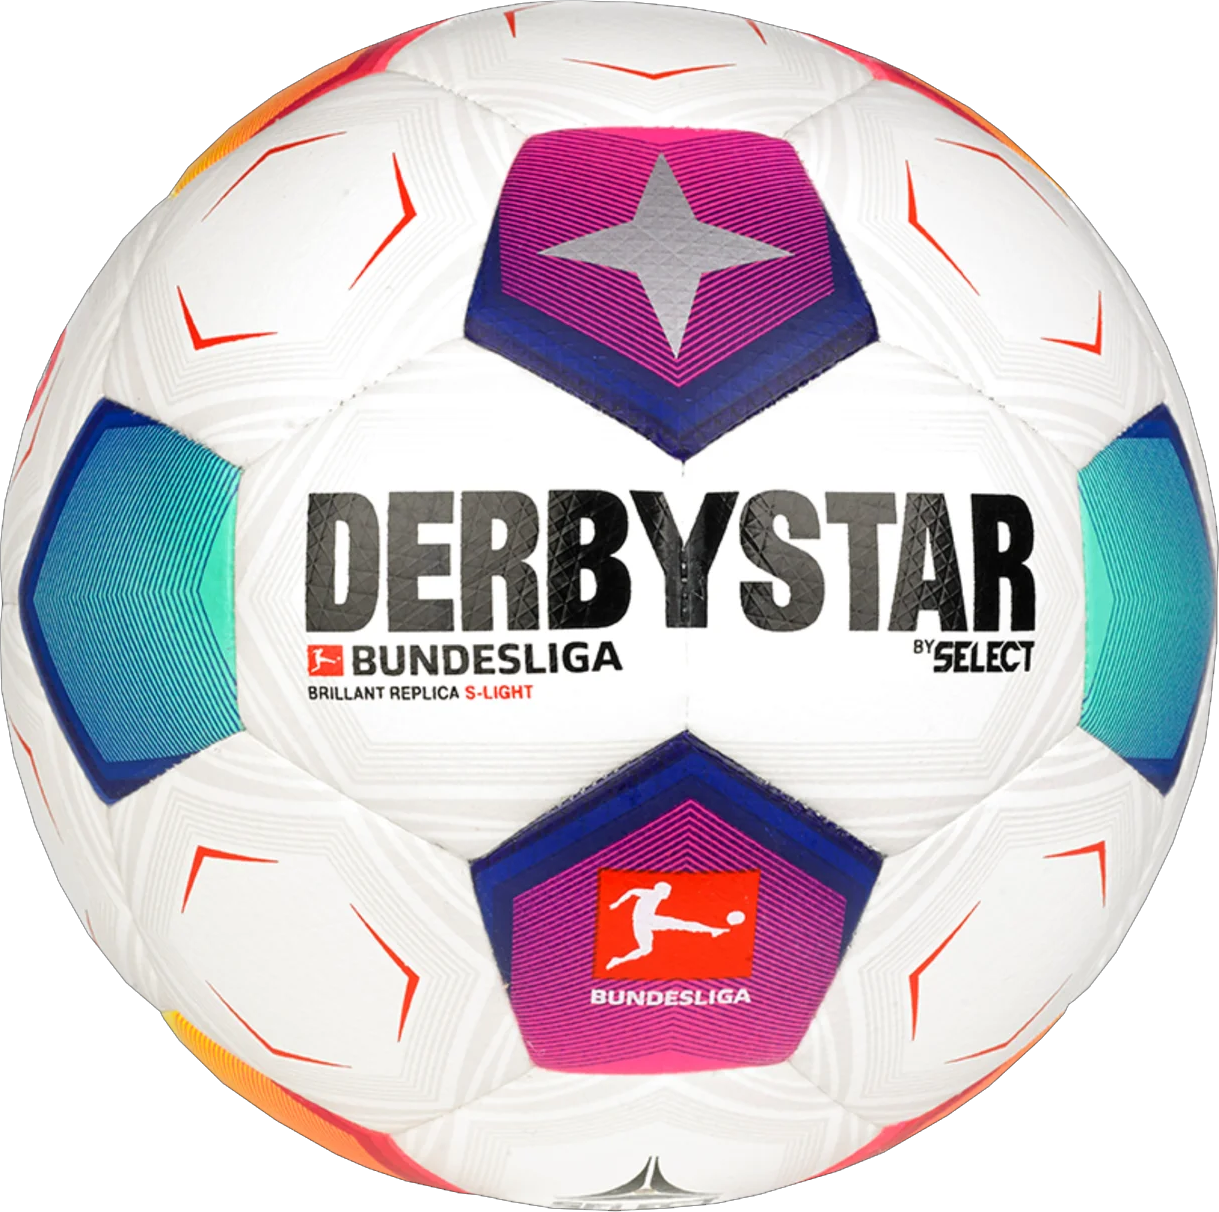 Μπάλα Derbystar Bundesliga Brillant Replica S-Light v23